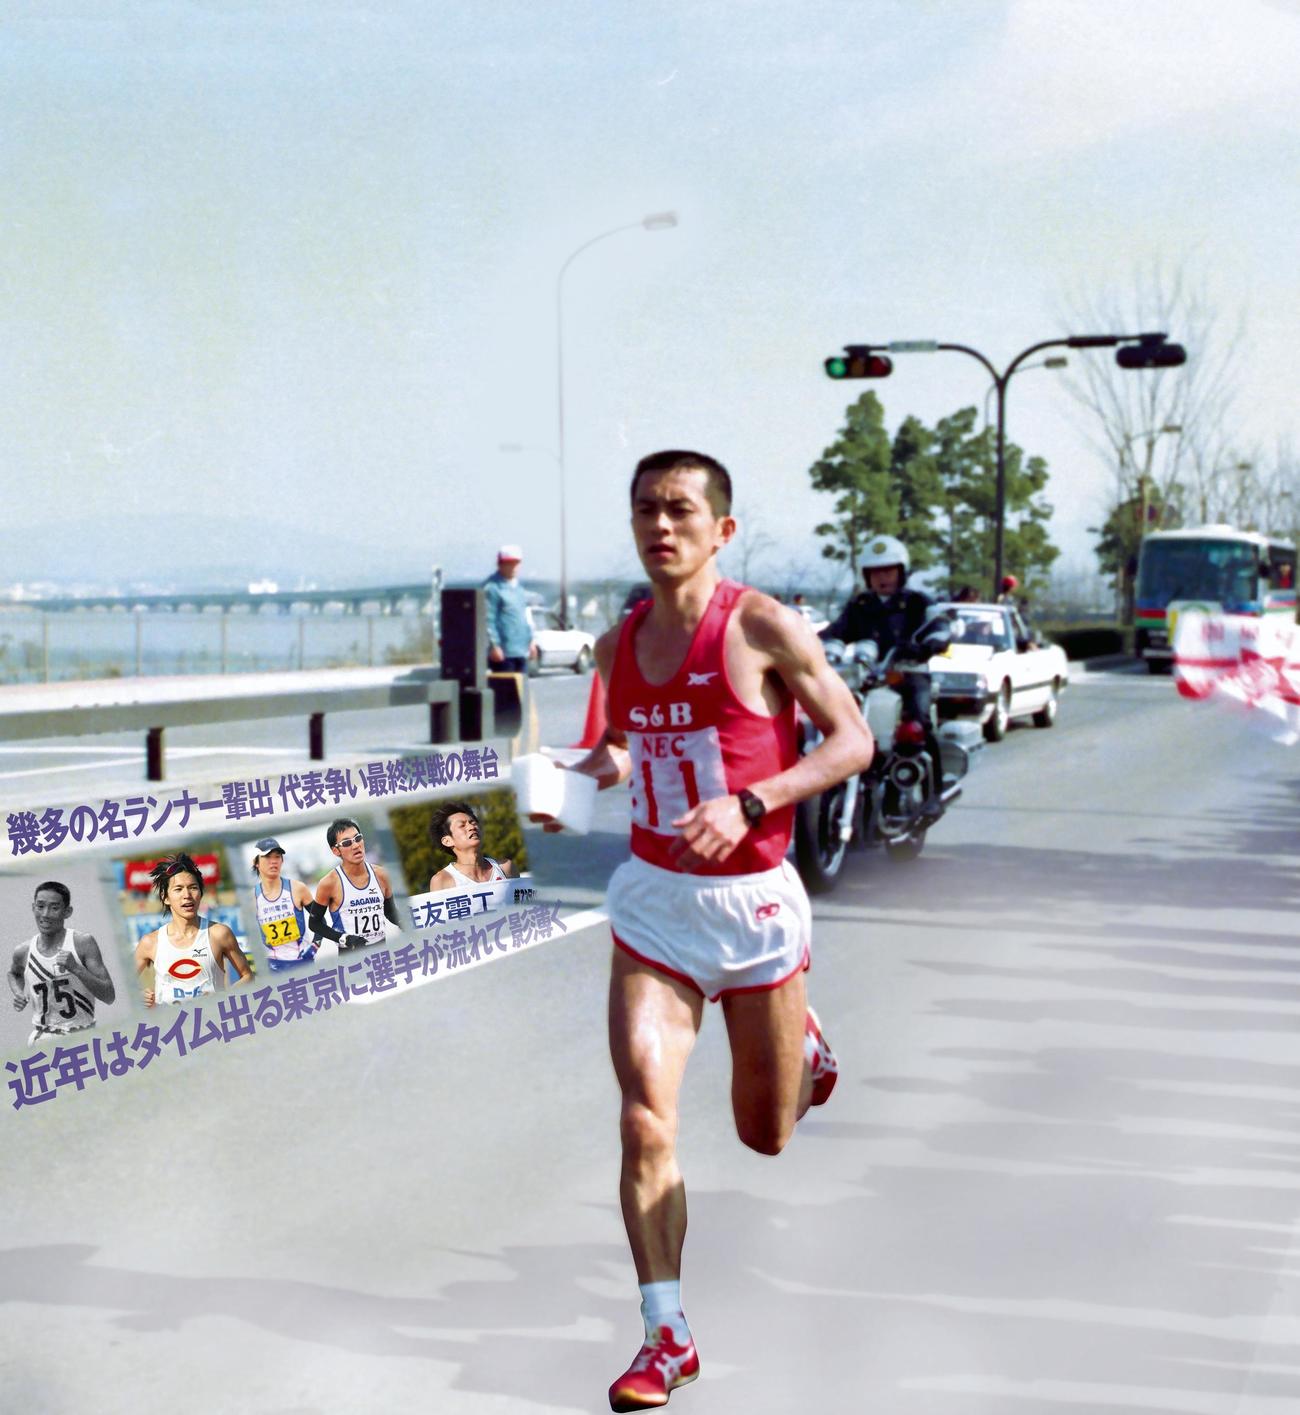 88年3月、びわ湖毎日マラソンで優勝した瀬古利彦の走り